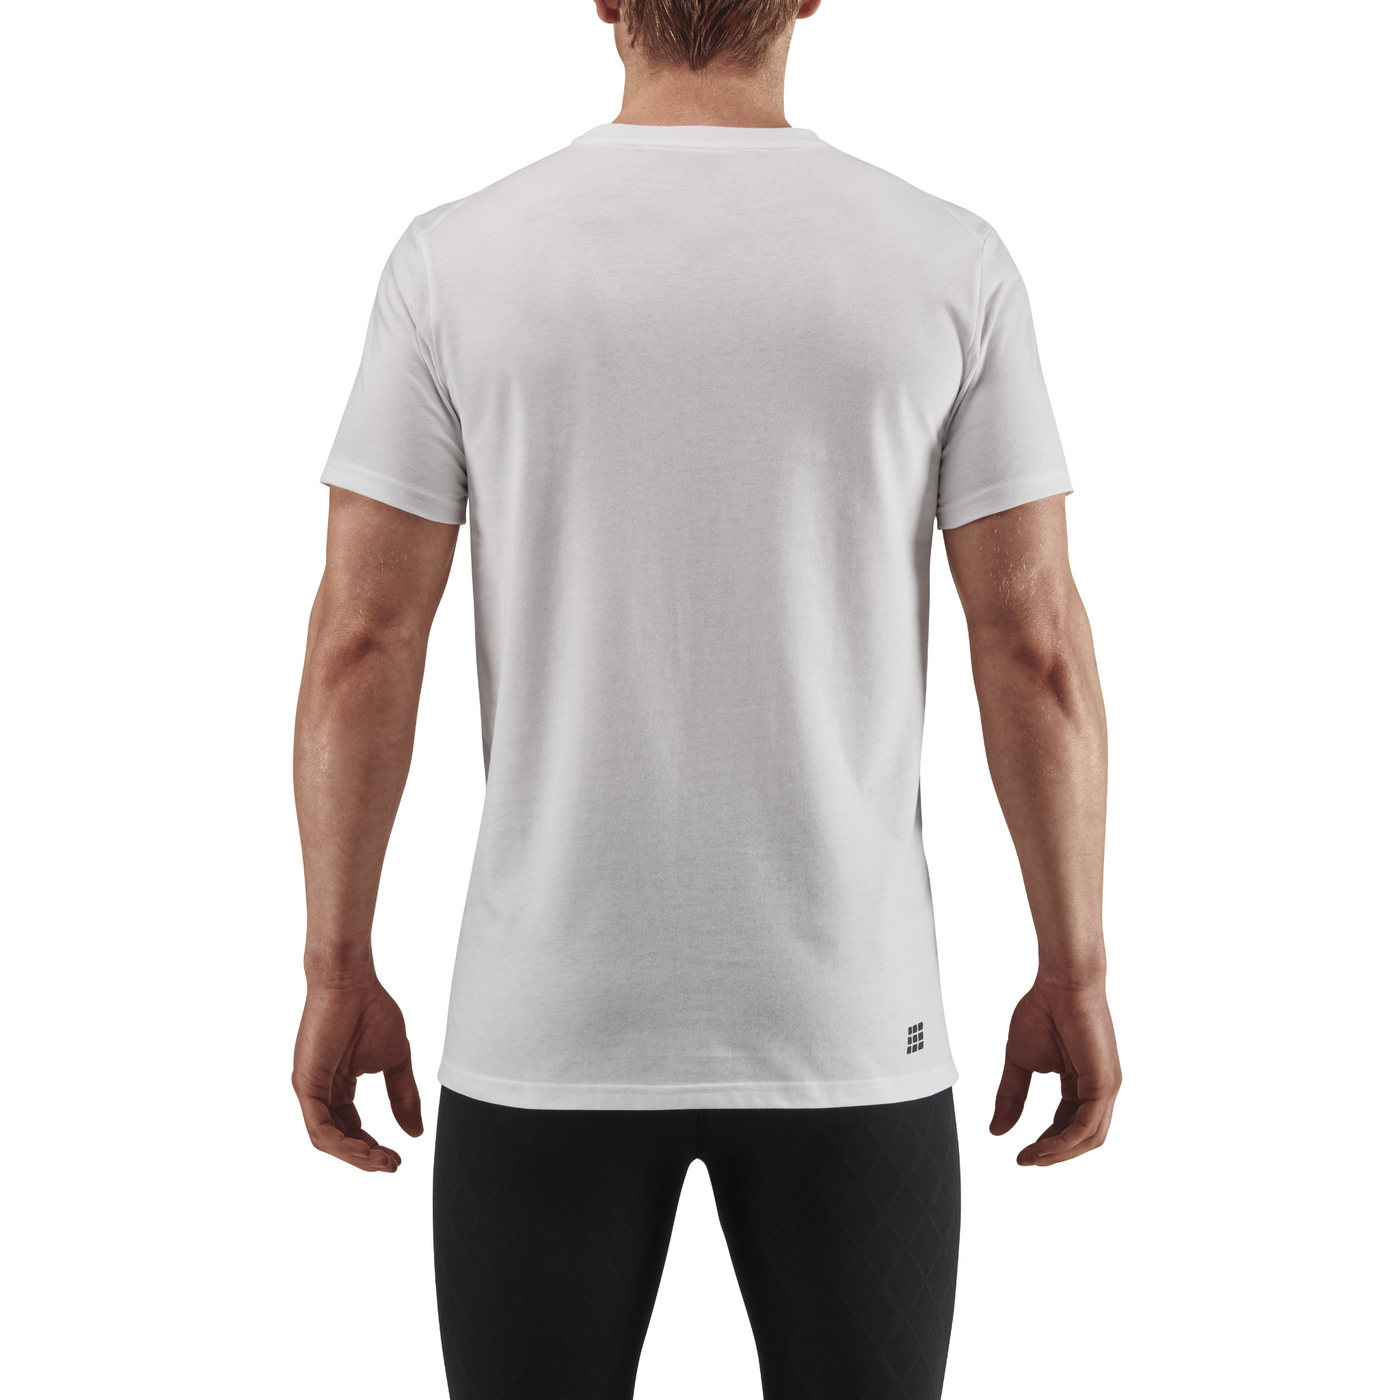 Crew Short Sleeve Shirt, Men, White, Back-View Model